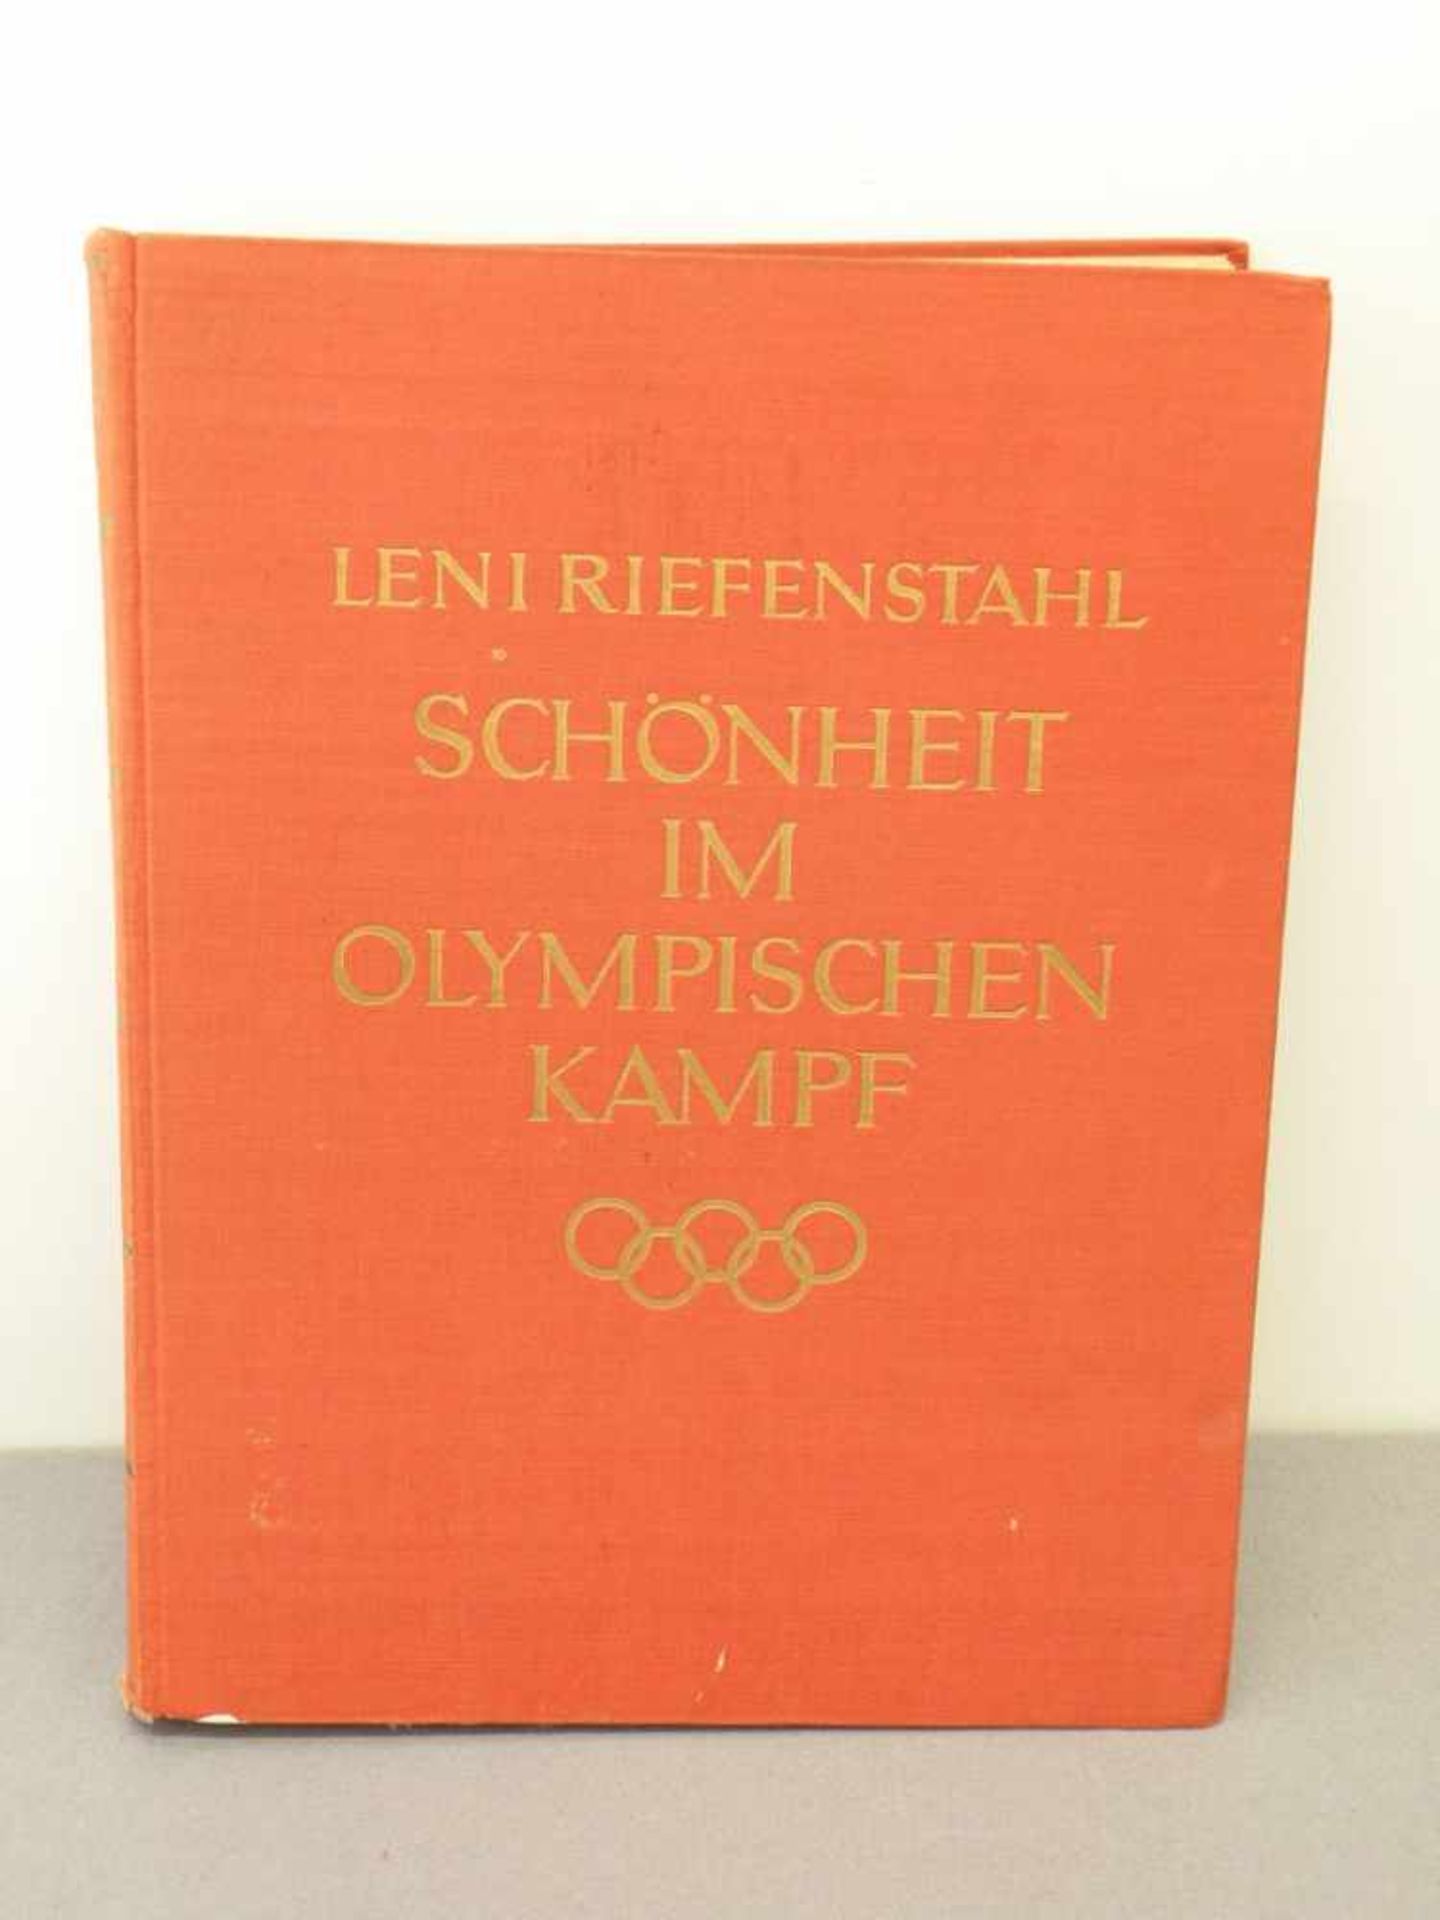 Buch "Schönheit im olympischen Kampf", illustriert, Berlin 1937, Einband leicht berieben